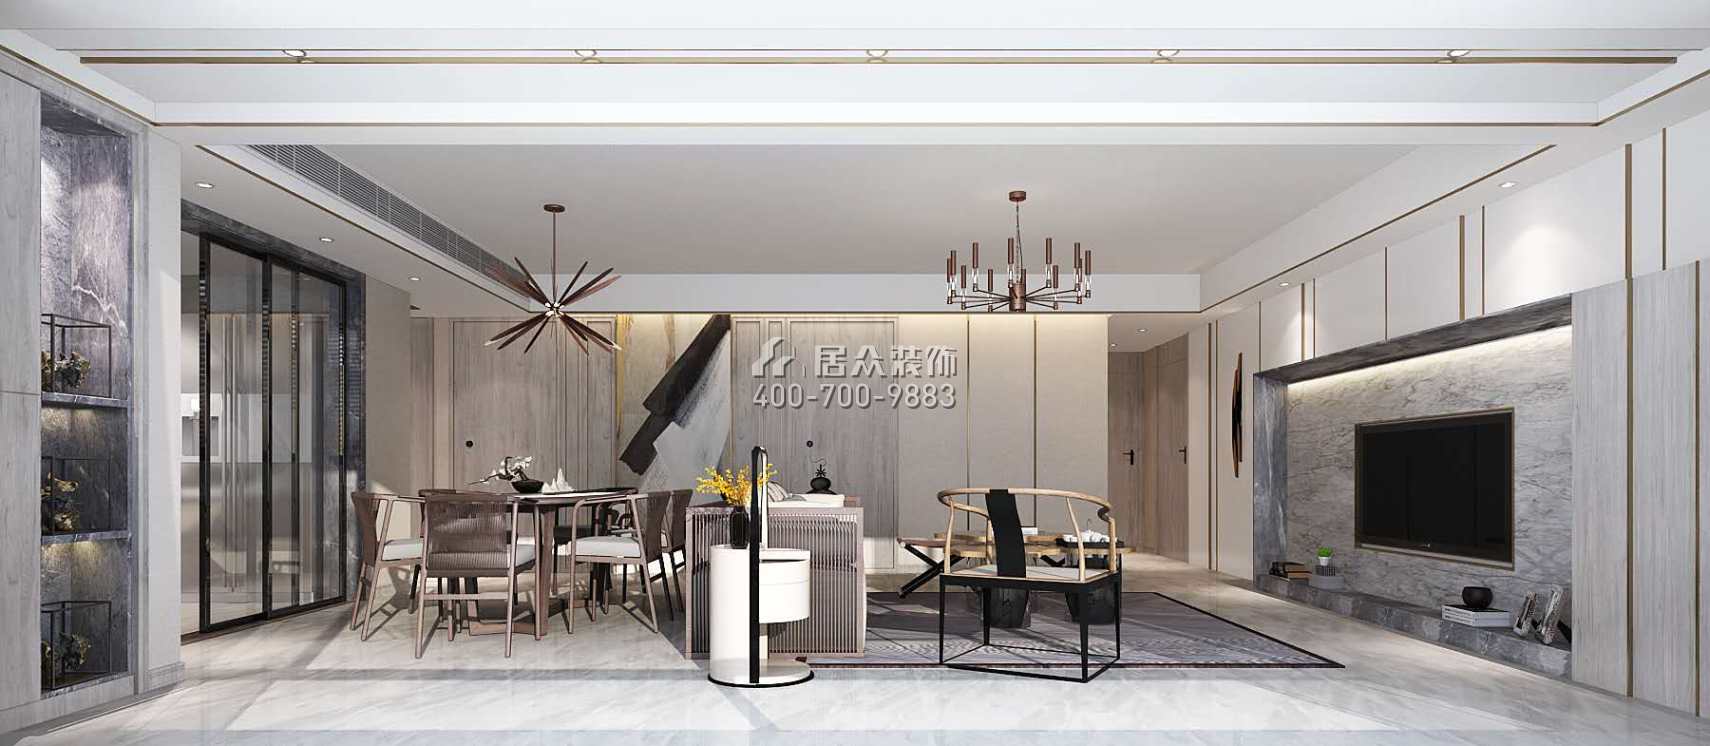 保利中央公园140平方米现代简约风格平层户型客餐厅一体装修效果图